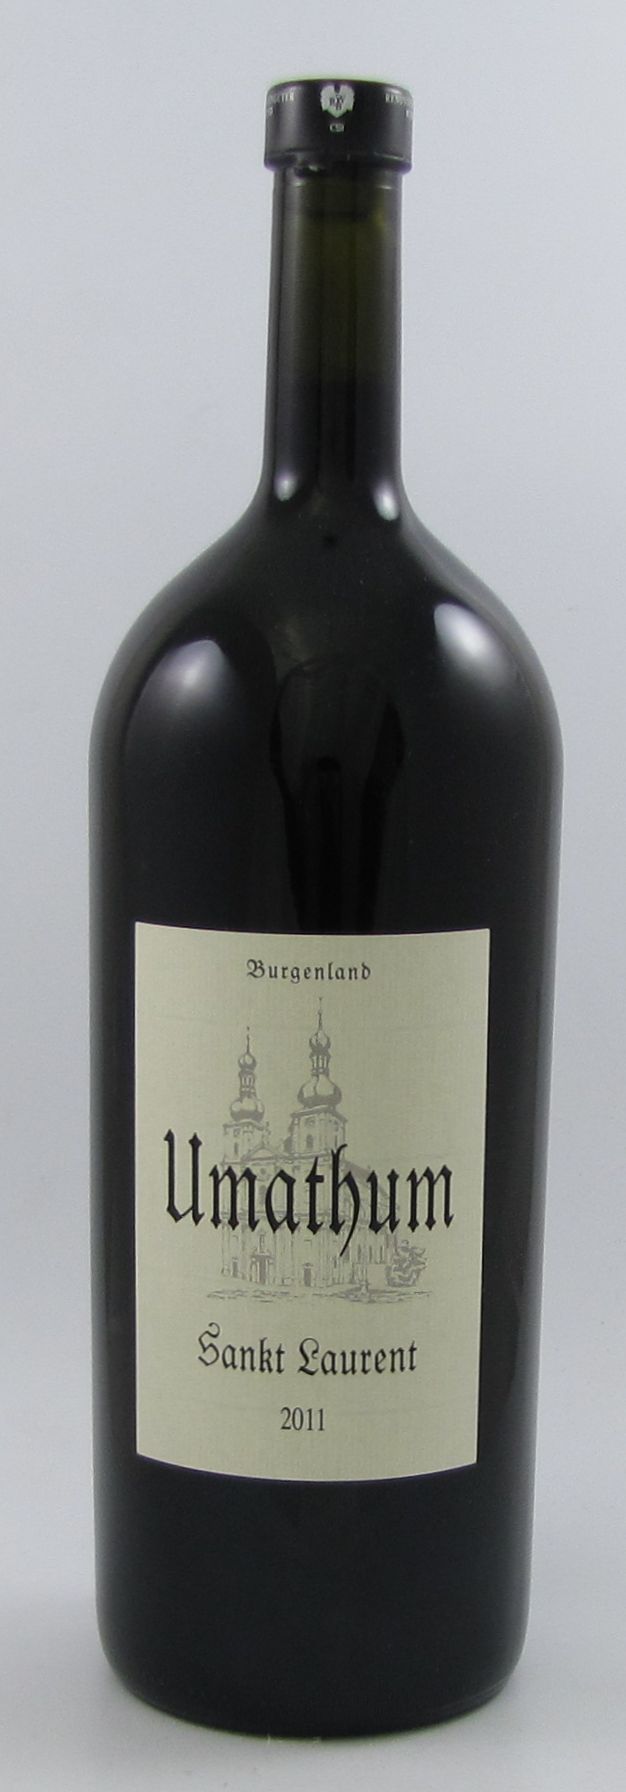 Sankt Laurent 2011 Umathum - 1,5 L Magnum